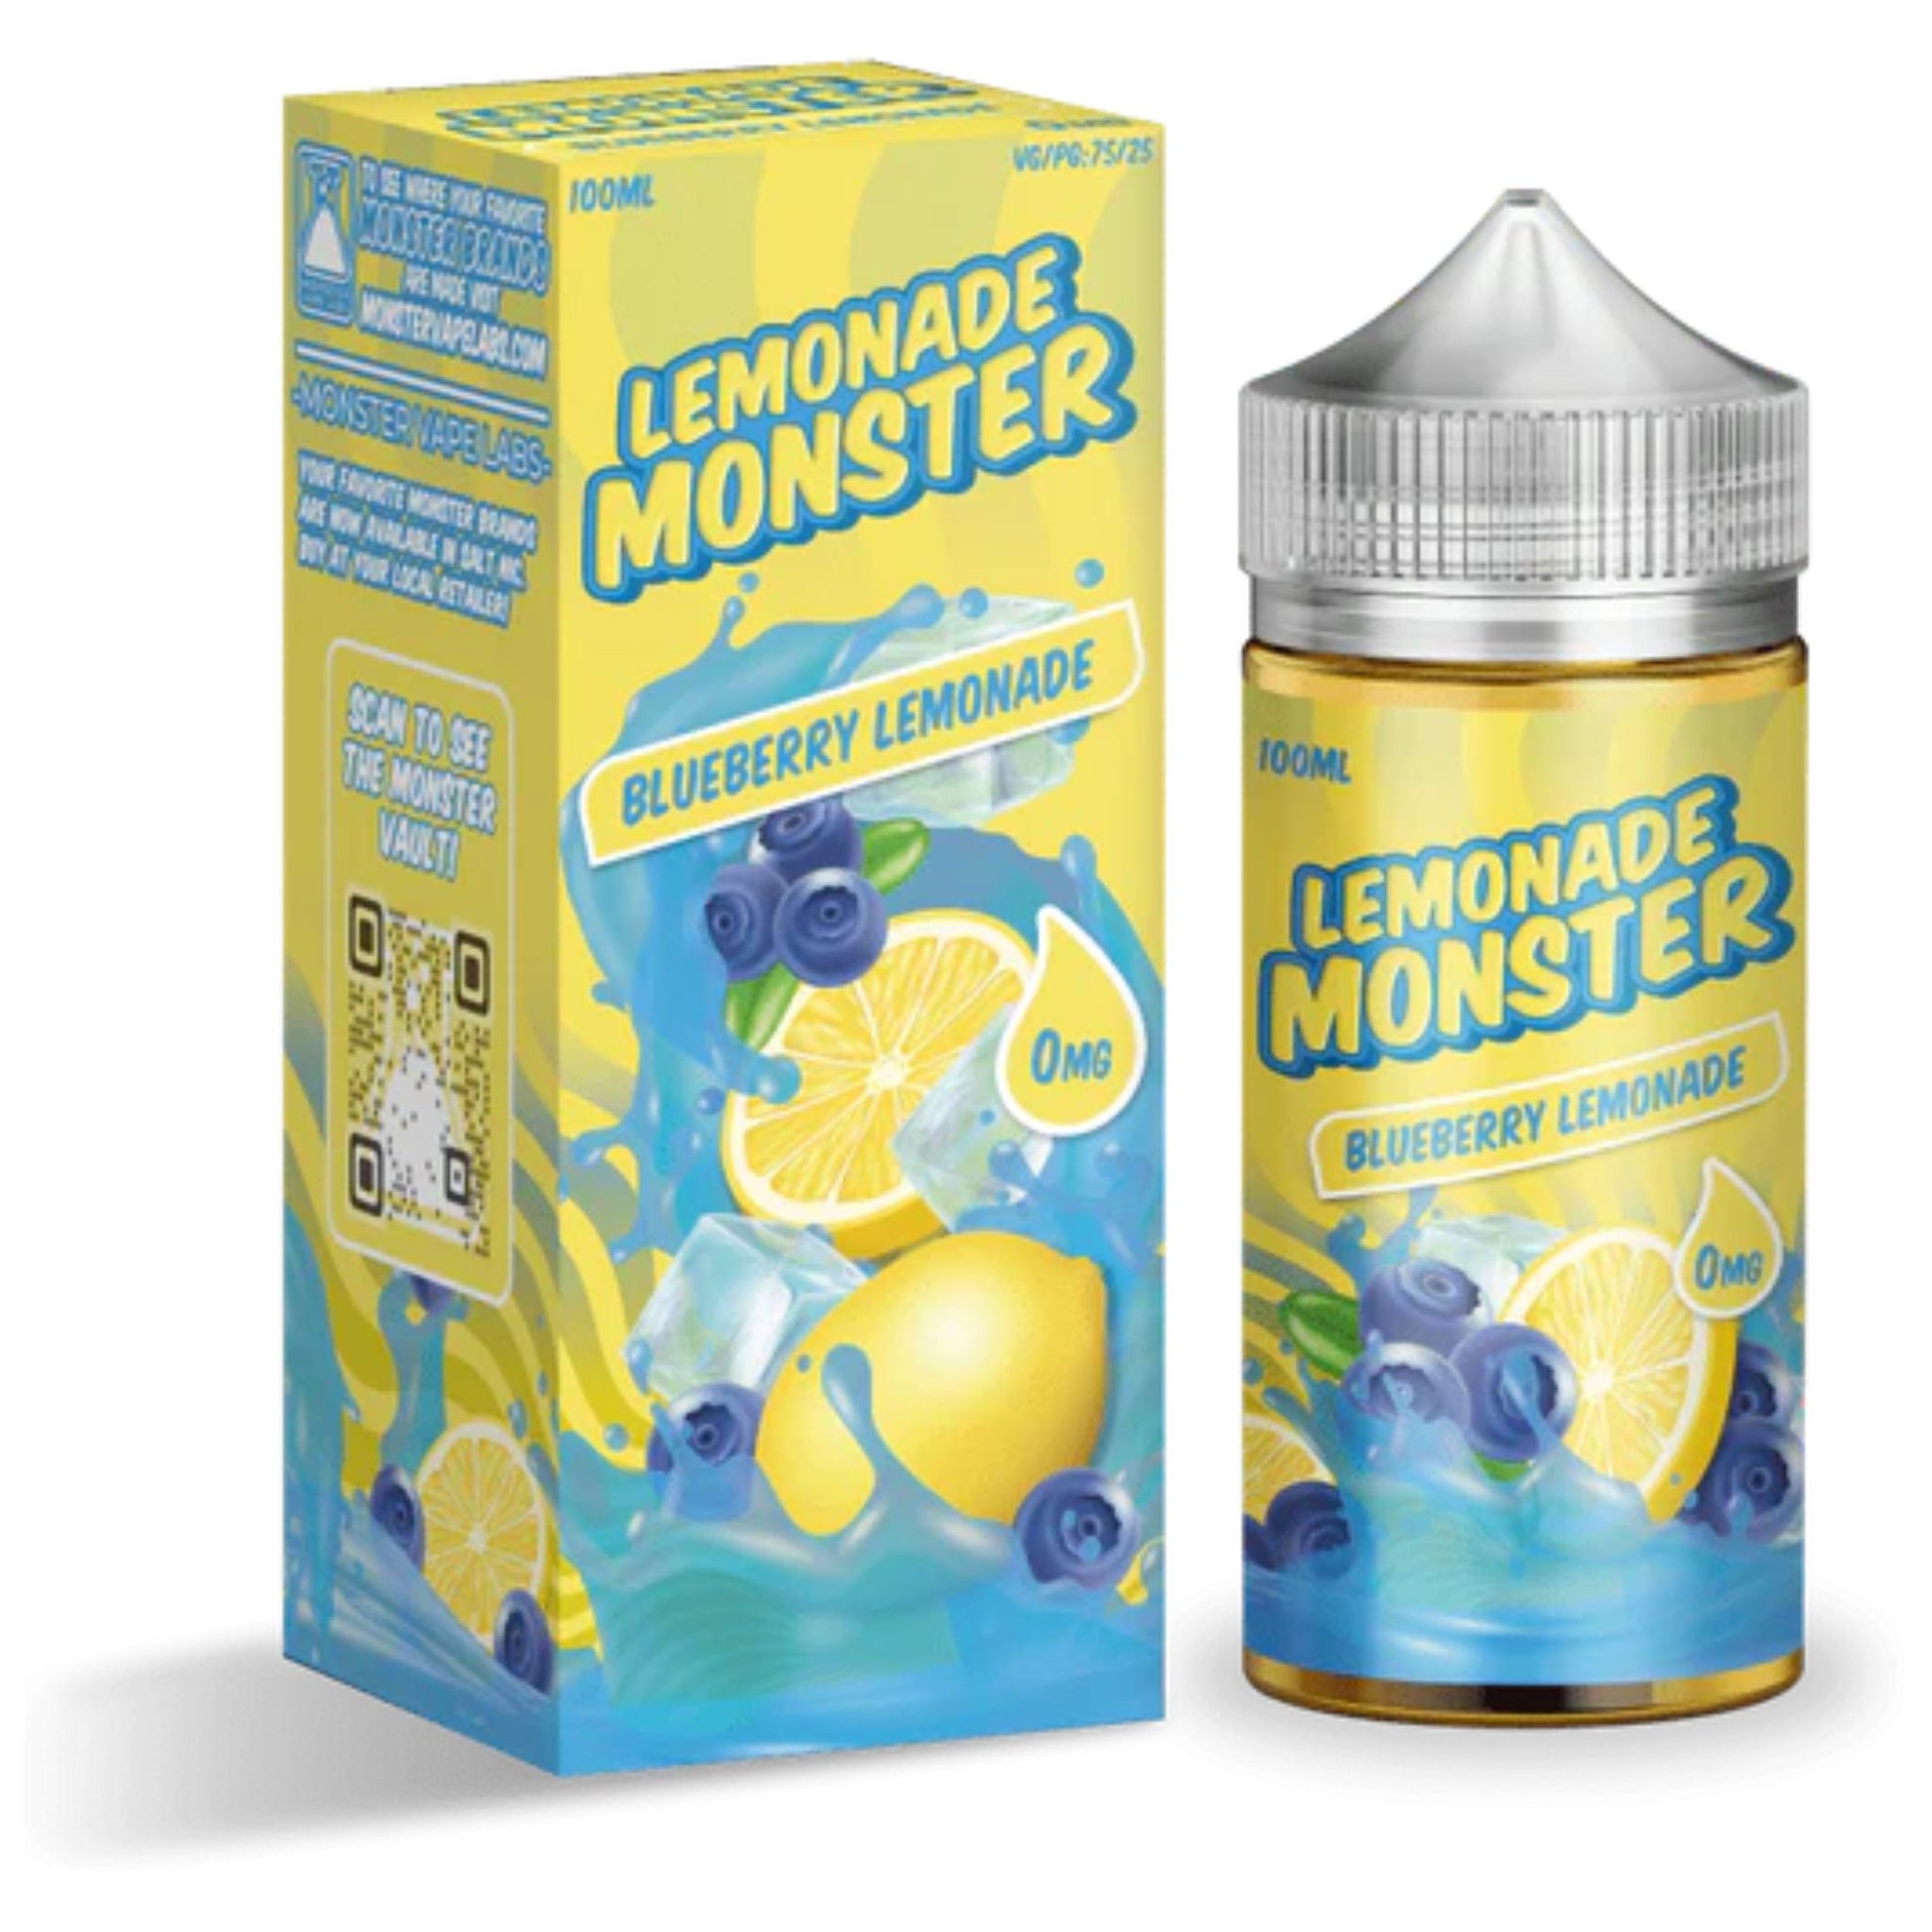 Lemonade Monster | Blueberry Lemonade | 100ml bottle and box